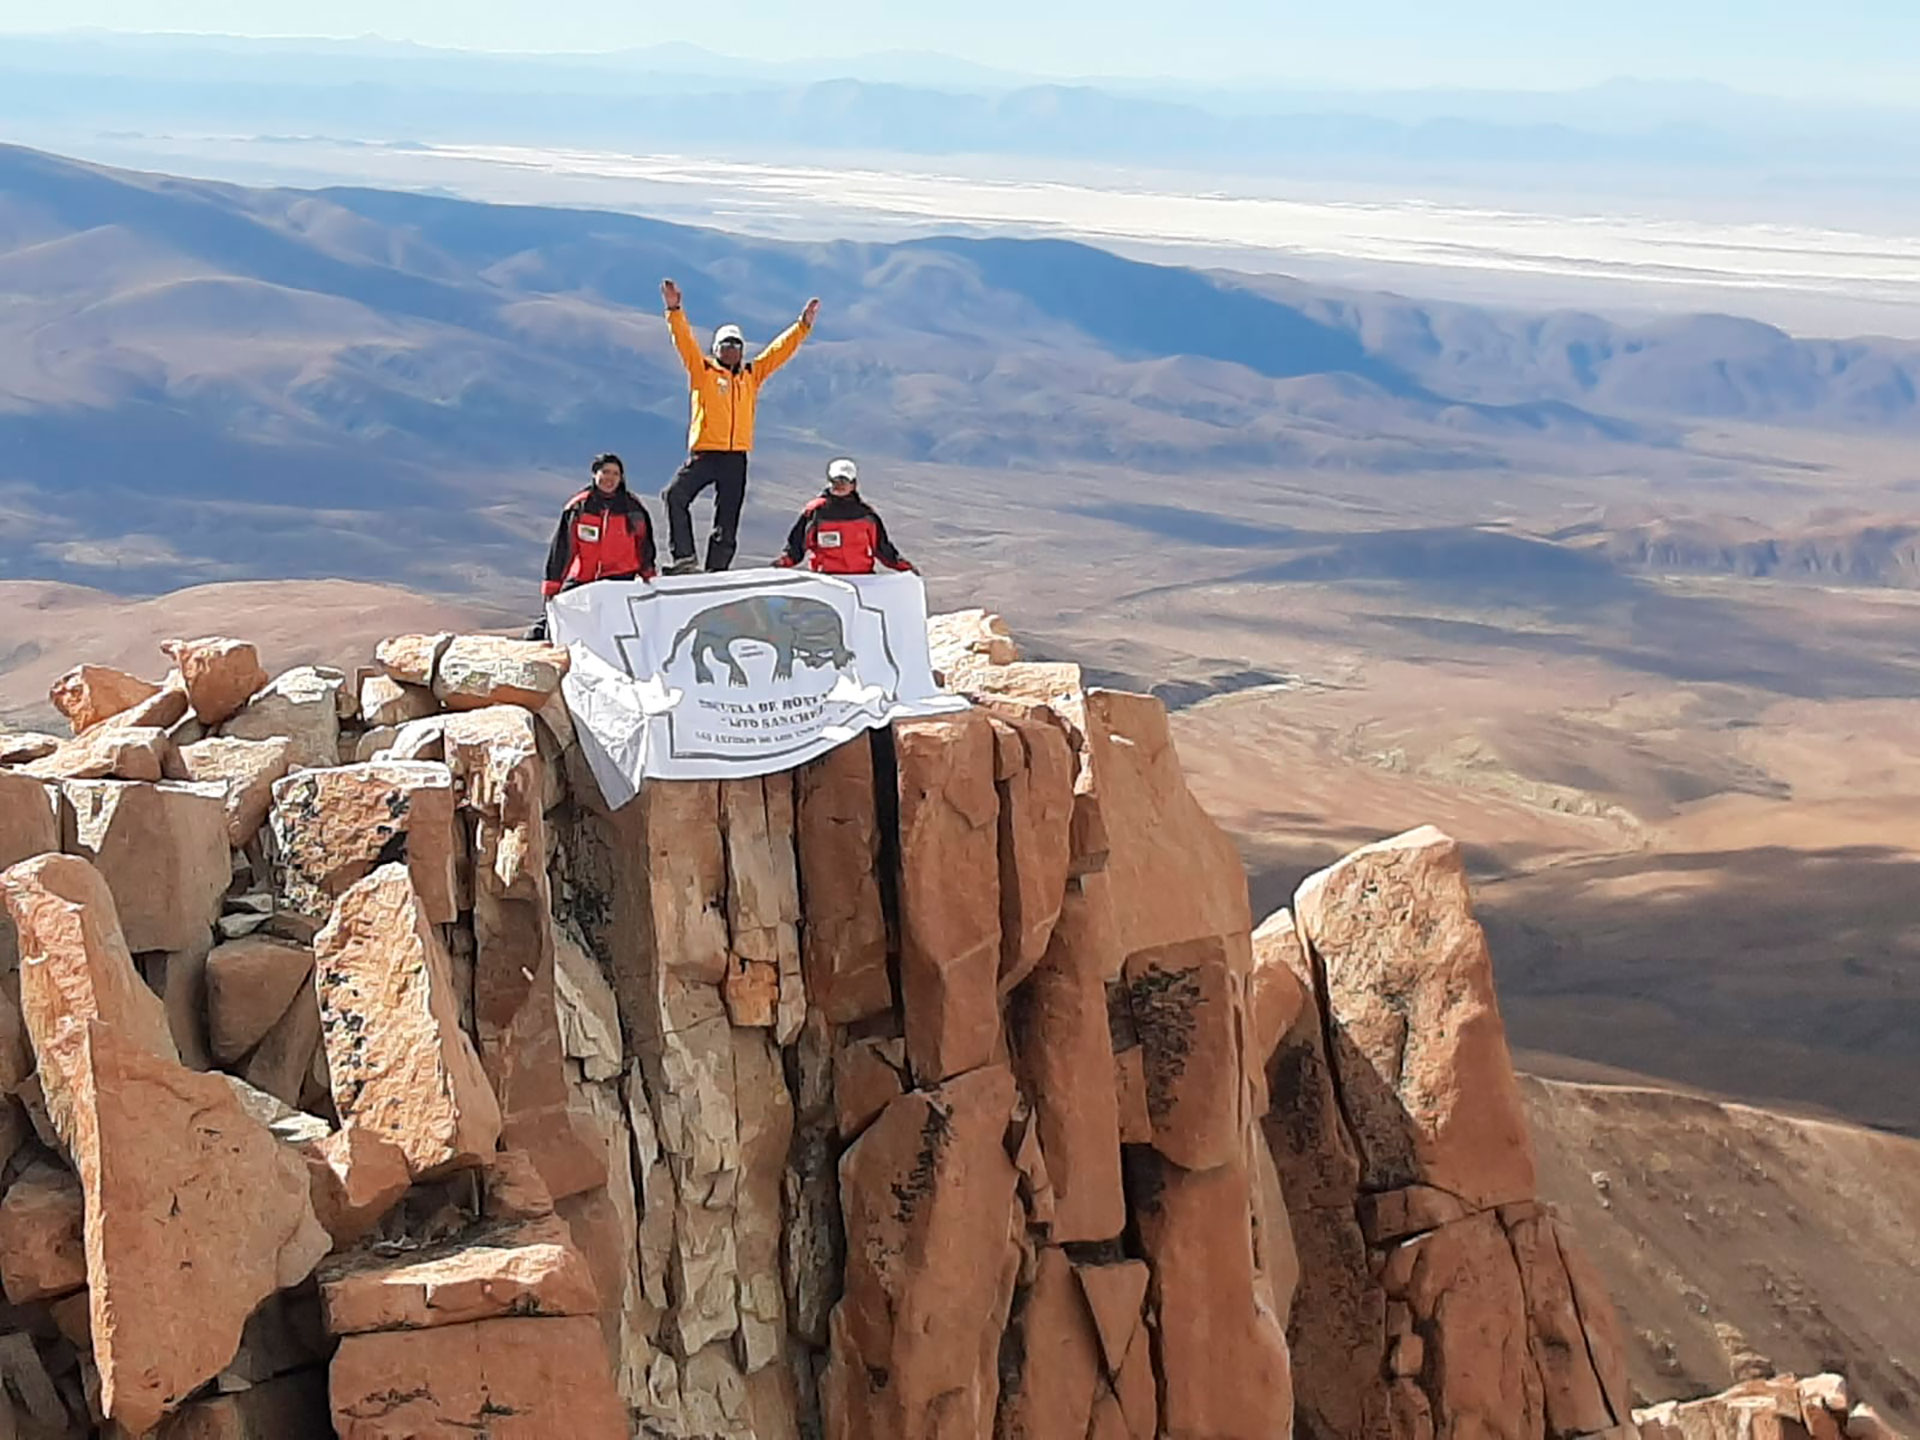 La vida de Jaime Soriano transcurre en las alturas. La foto fue tomada en el Nevado de Chañi, en Jujuy